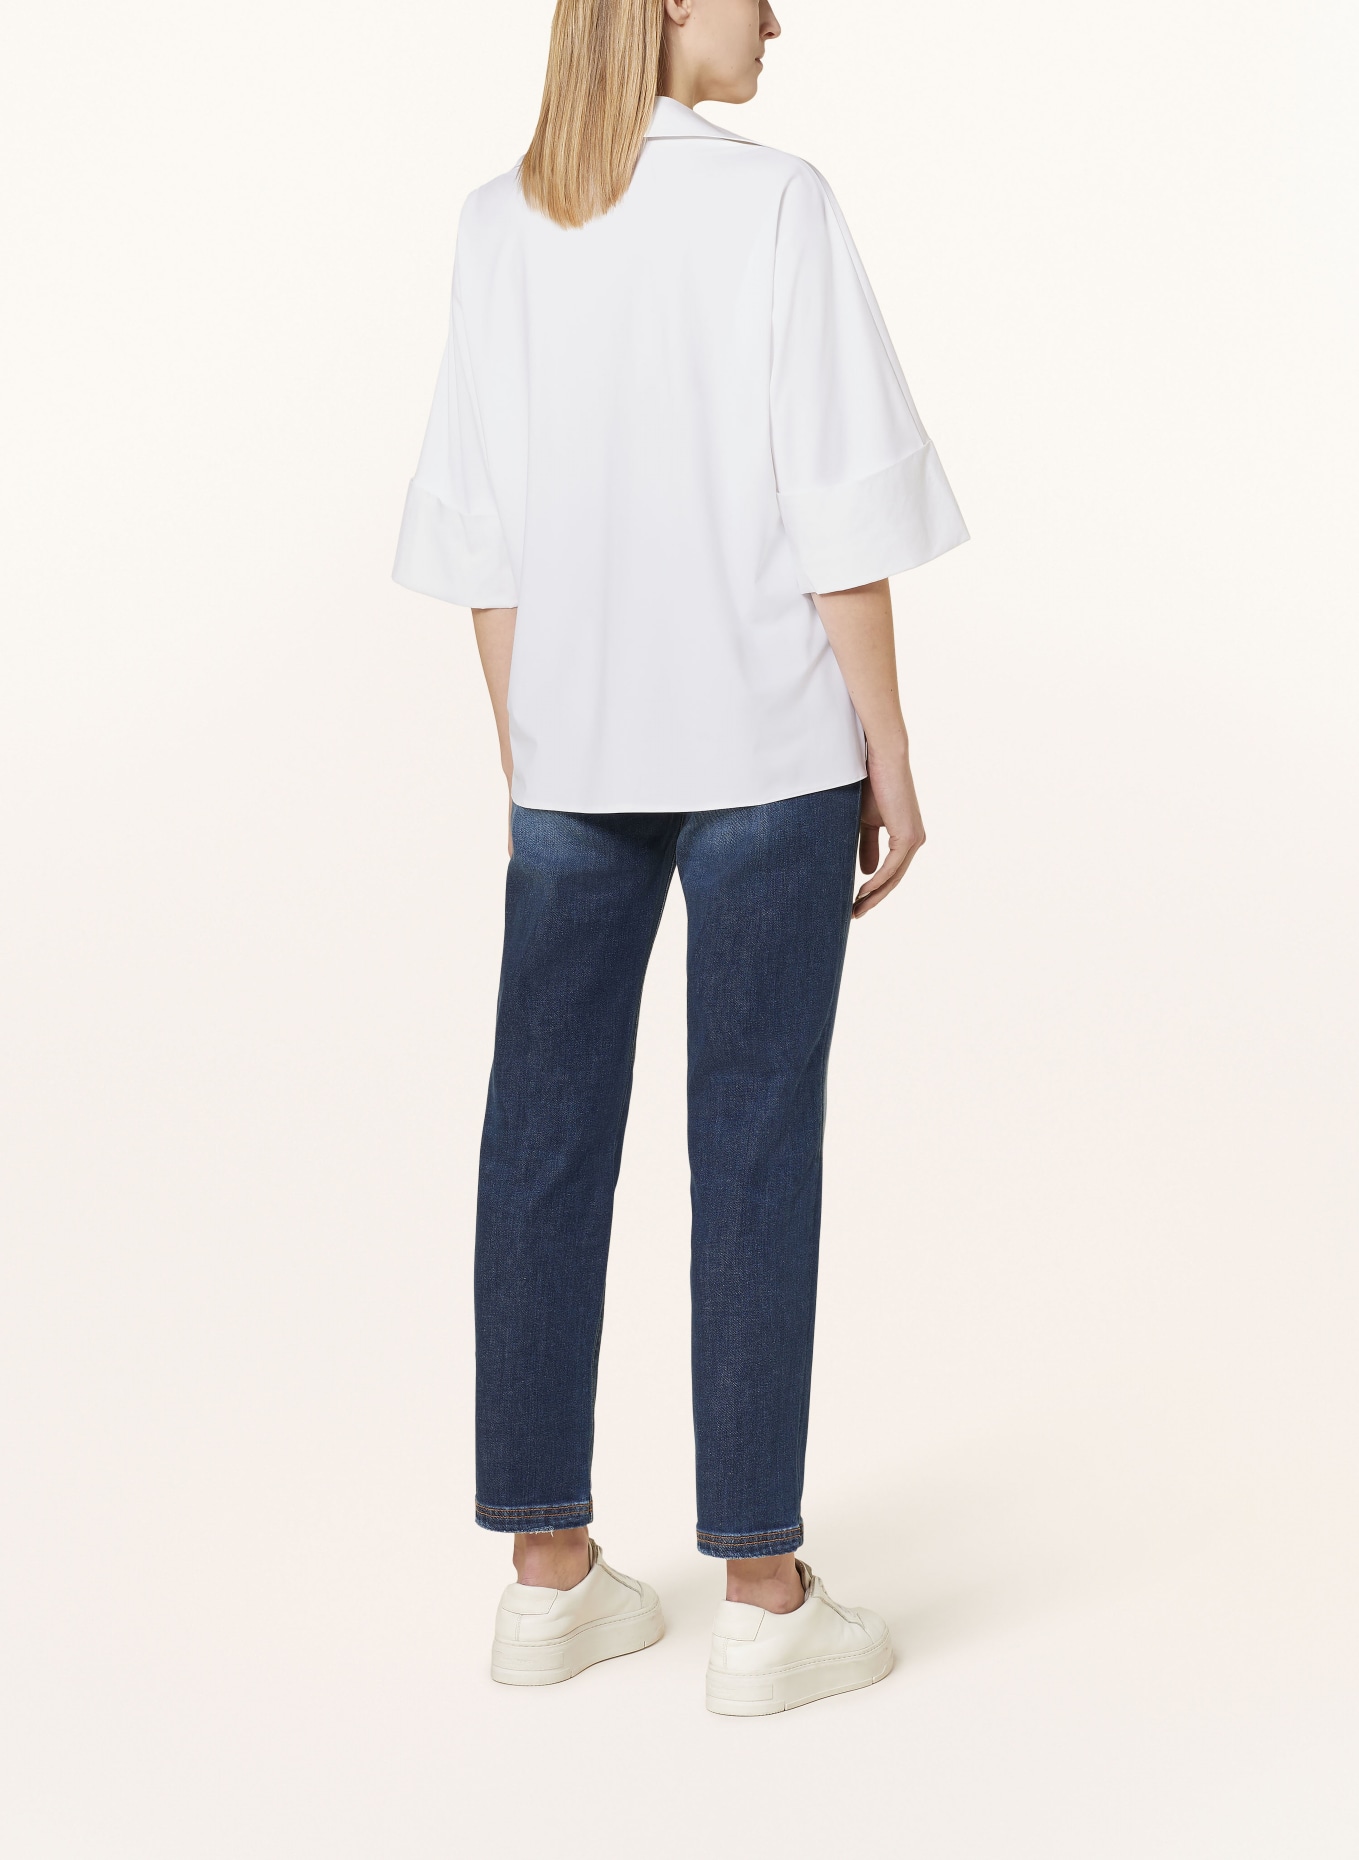 SPORTALM Shirt blouse, Color: WHITE (Image 3)